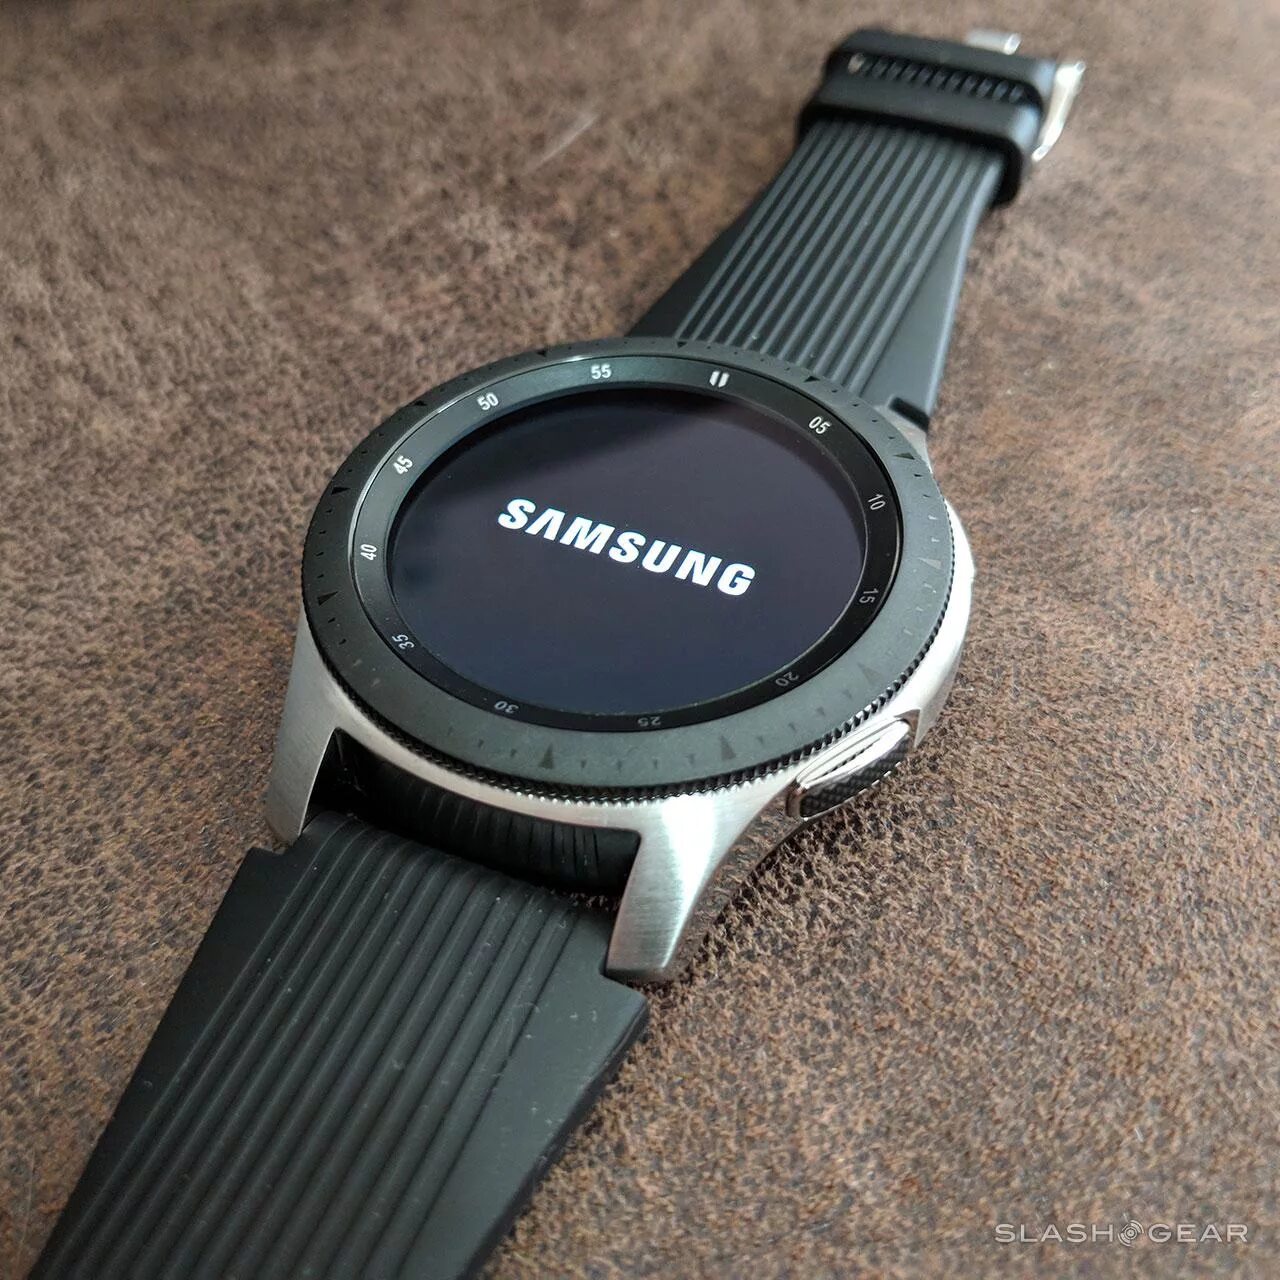 Samsung watch r800. Samsung Galaxy watch r800. Samsung Galaxy watch SM-r800. Samsung Galaxy watch 46mm SM-r800 Silver. Samsung Galaxy watch 46mm Silver r800.